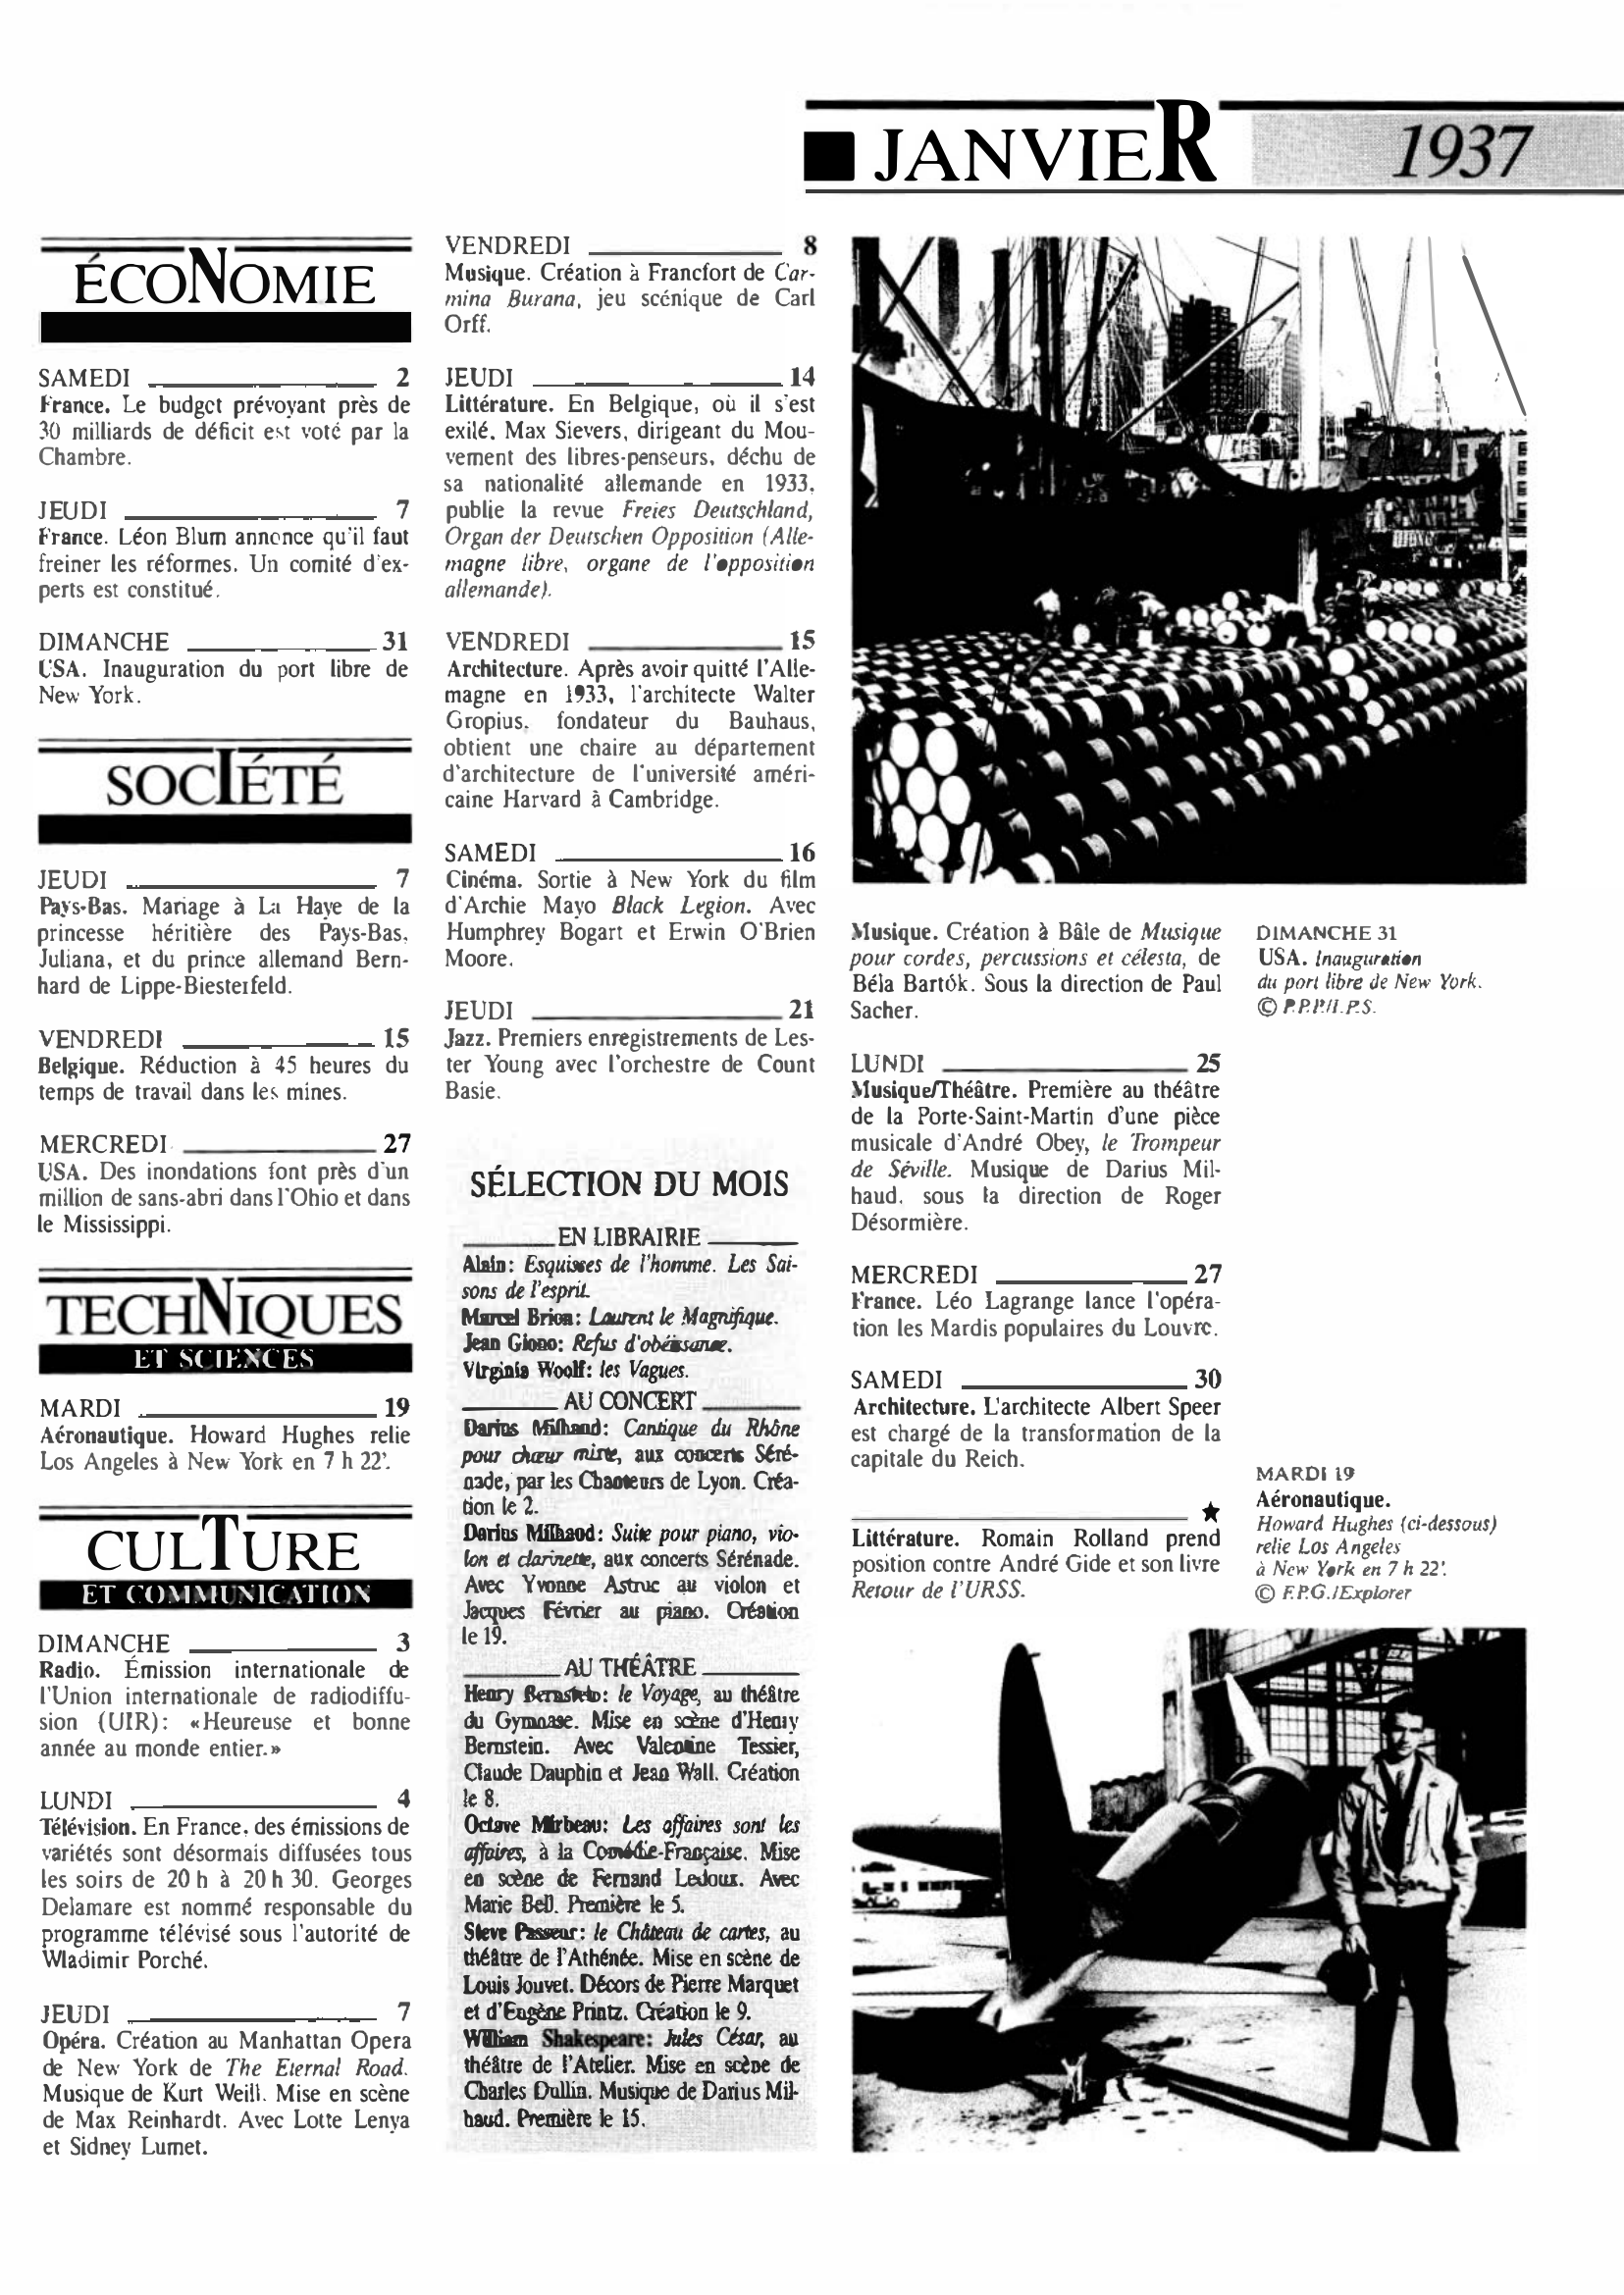 Prévisualisation du document 1937 Janvier dans le monde (histoire chronologique)